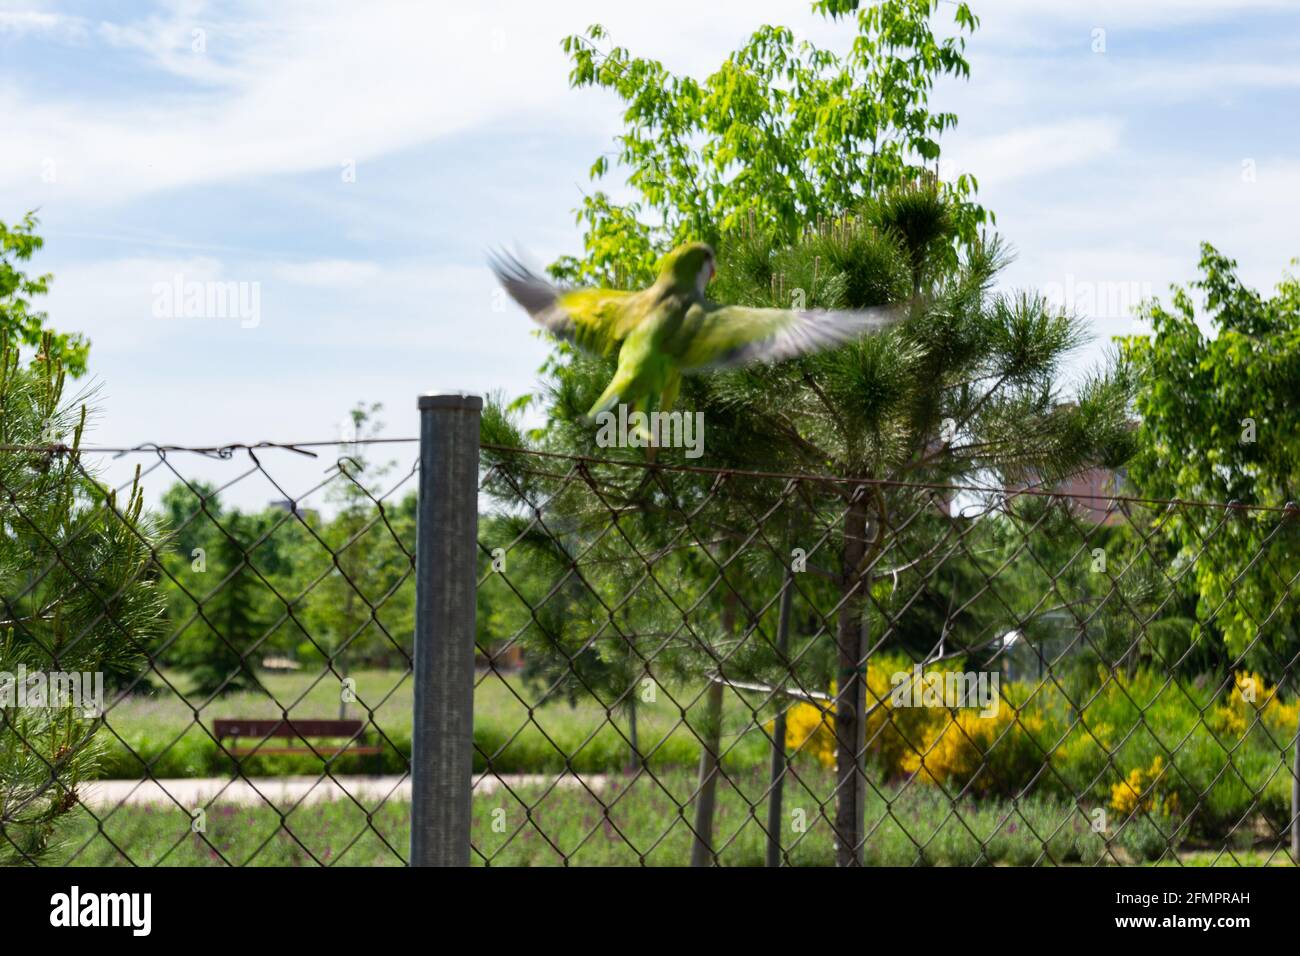 Pappagallo verde o 'miopsitta monachus' in un parco a Madrid, Spagna. Fotografia orizzontale. Foto Stock